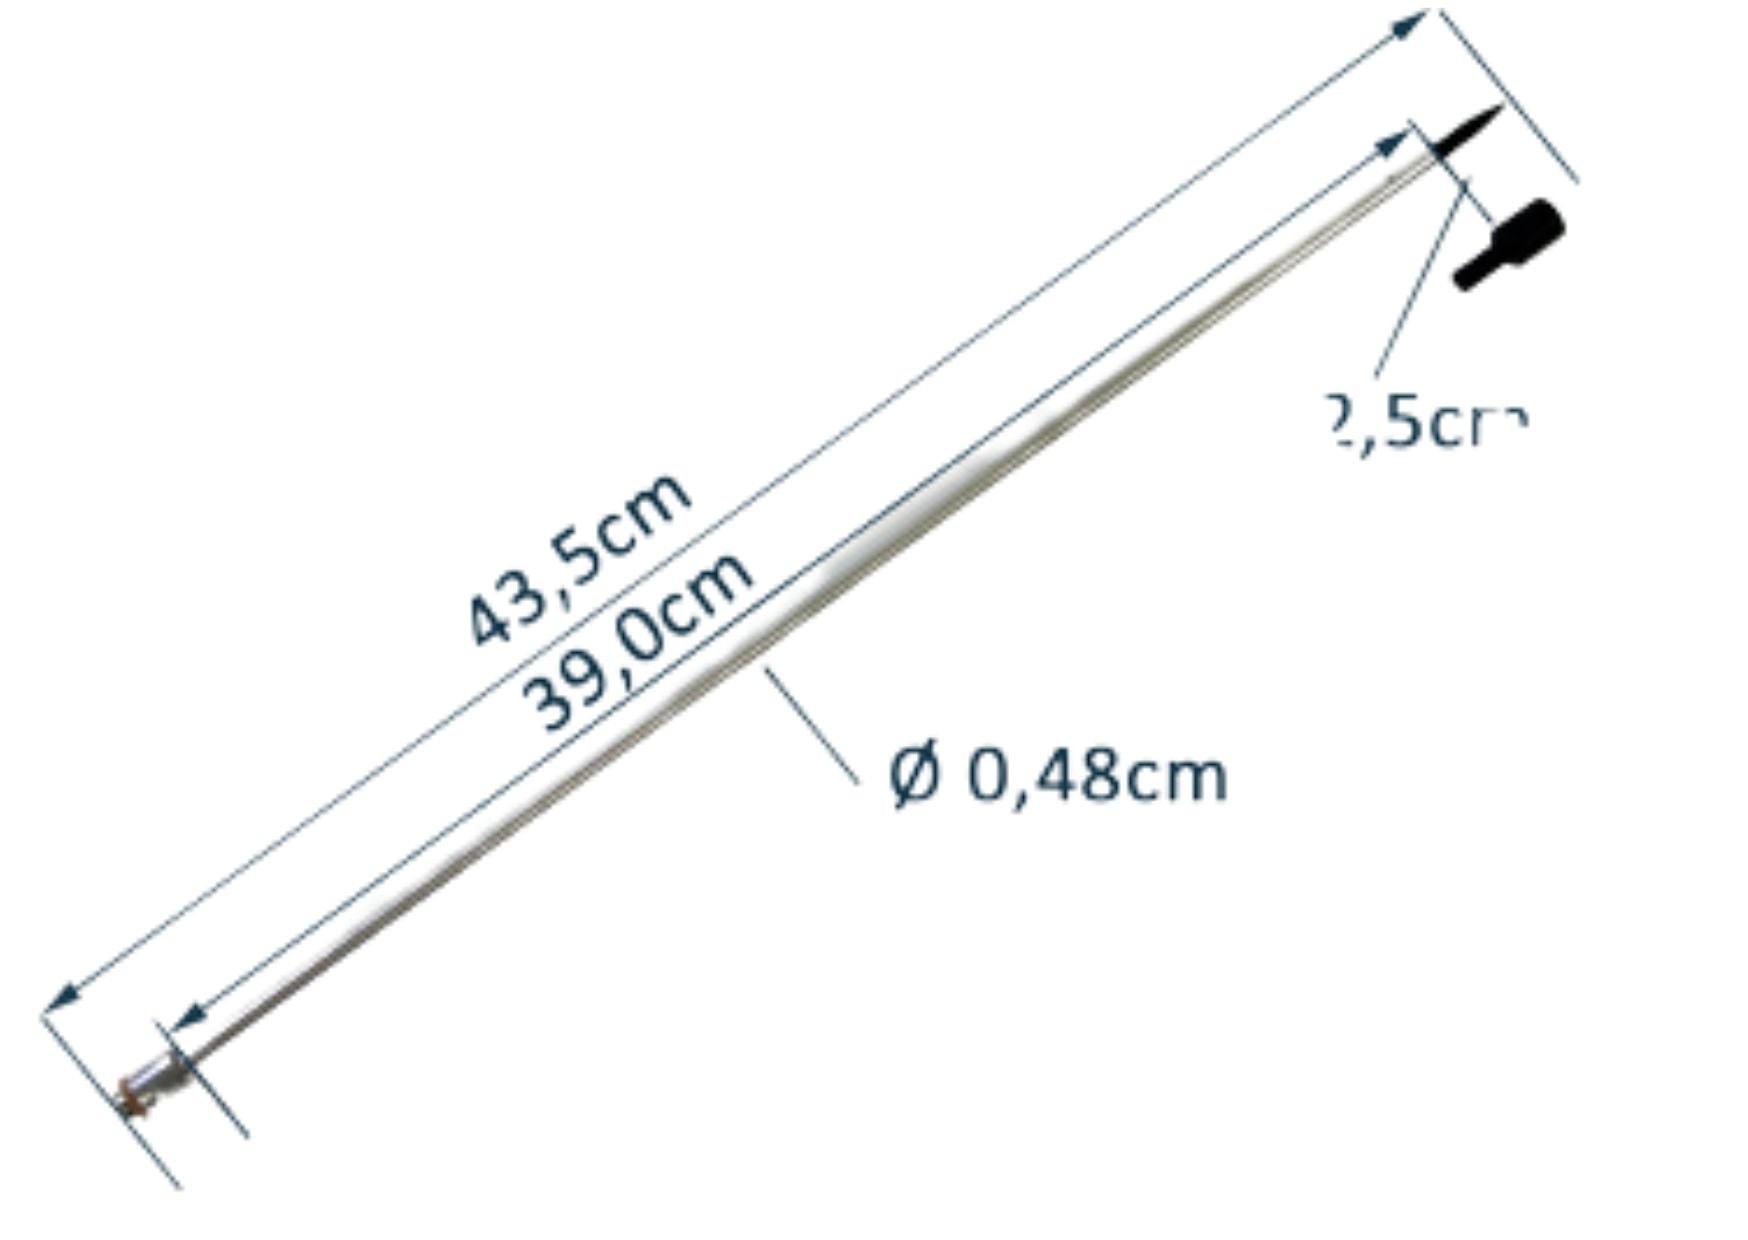 Trocar Hypo Shaft, 3/16" x 42 cm (16.5"), 5/16-36 thread-M, TP6333